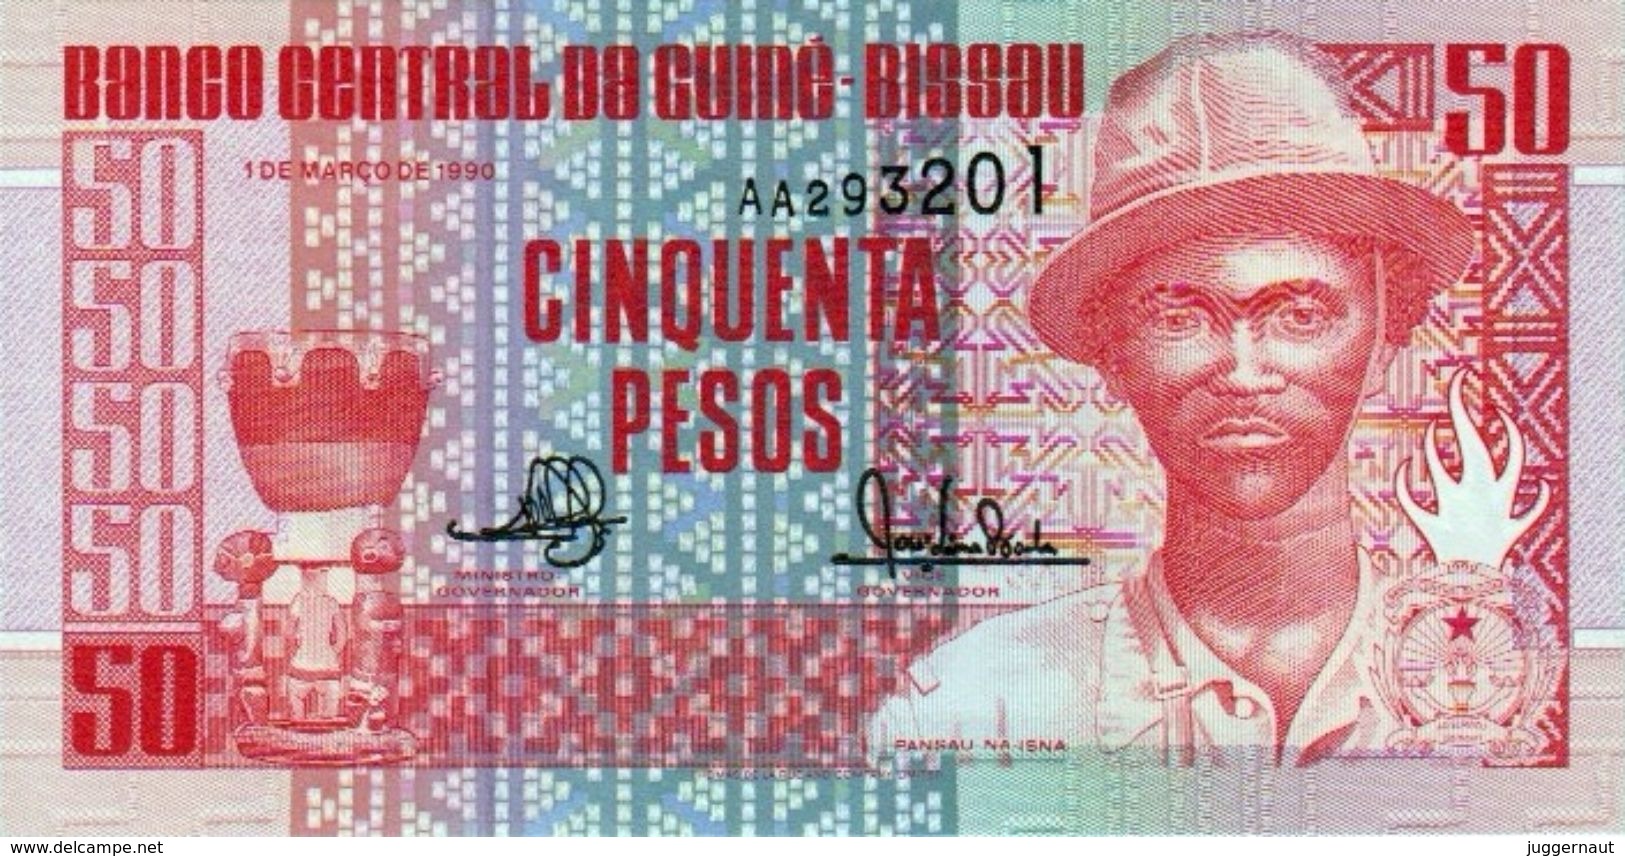 GUINEA-BISSAU 50 PESOS BANKNOTE 1990 AD PICK NO.10 UNCIRCULATED UNC - Guinea–Bissau